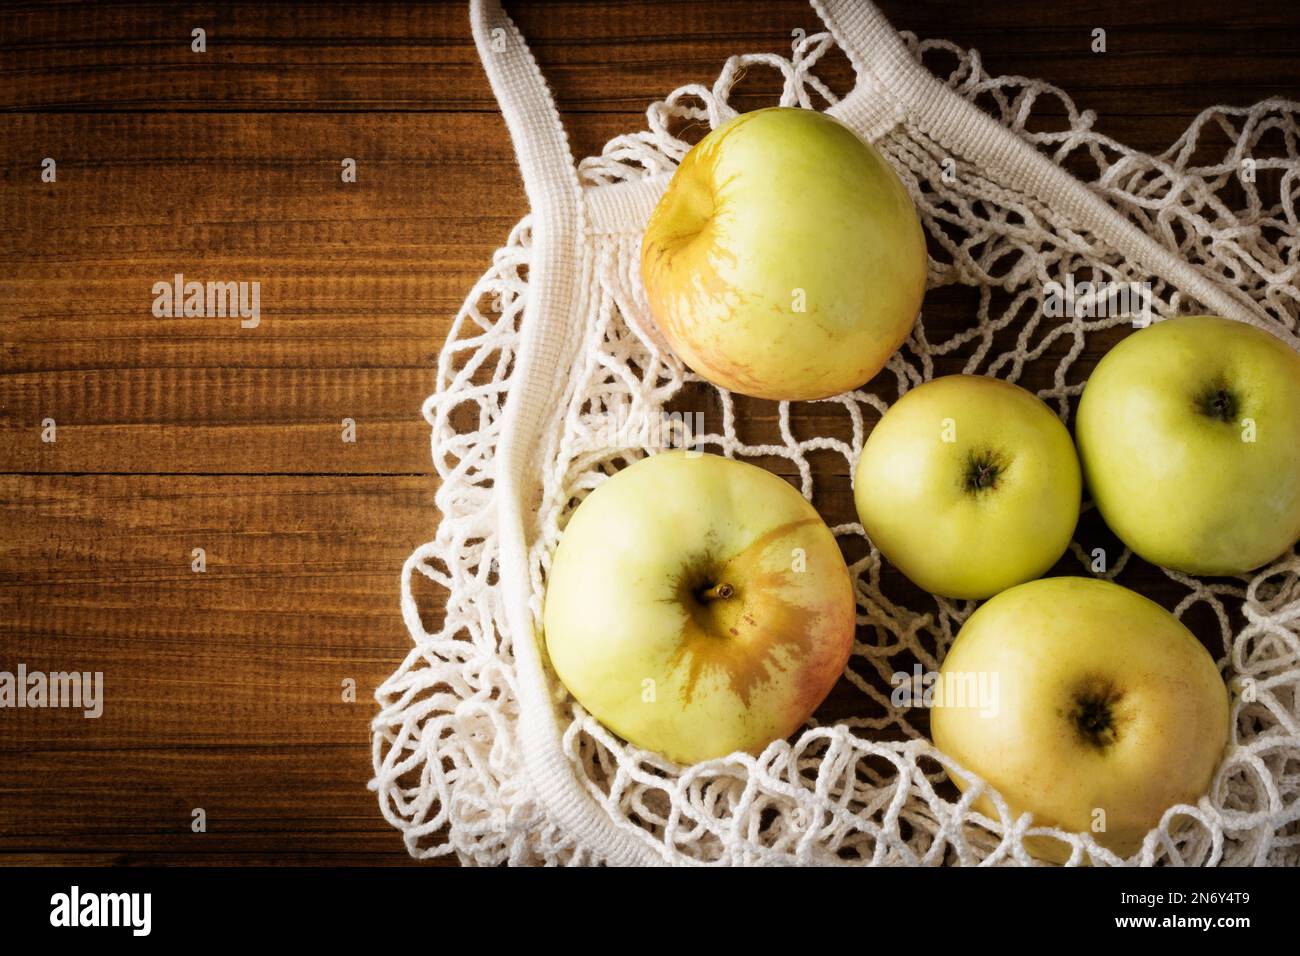 Bolso neto de algodón con manzanas de frutas sobre fondo de madera oscura. Estilo de vida sostenible. Bolsa de compras reutilizable, forma de vida sostenible. Ambiente ecológico Foto de stock